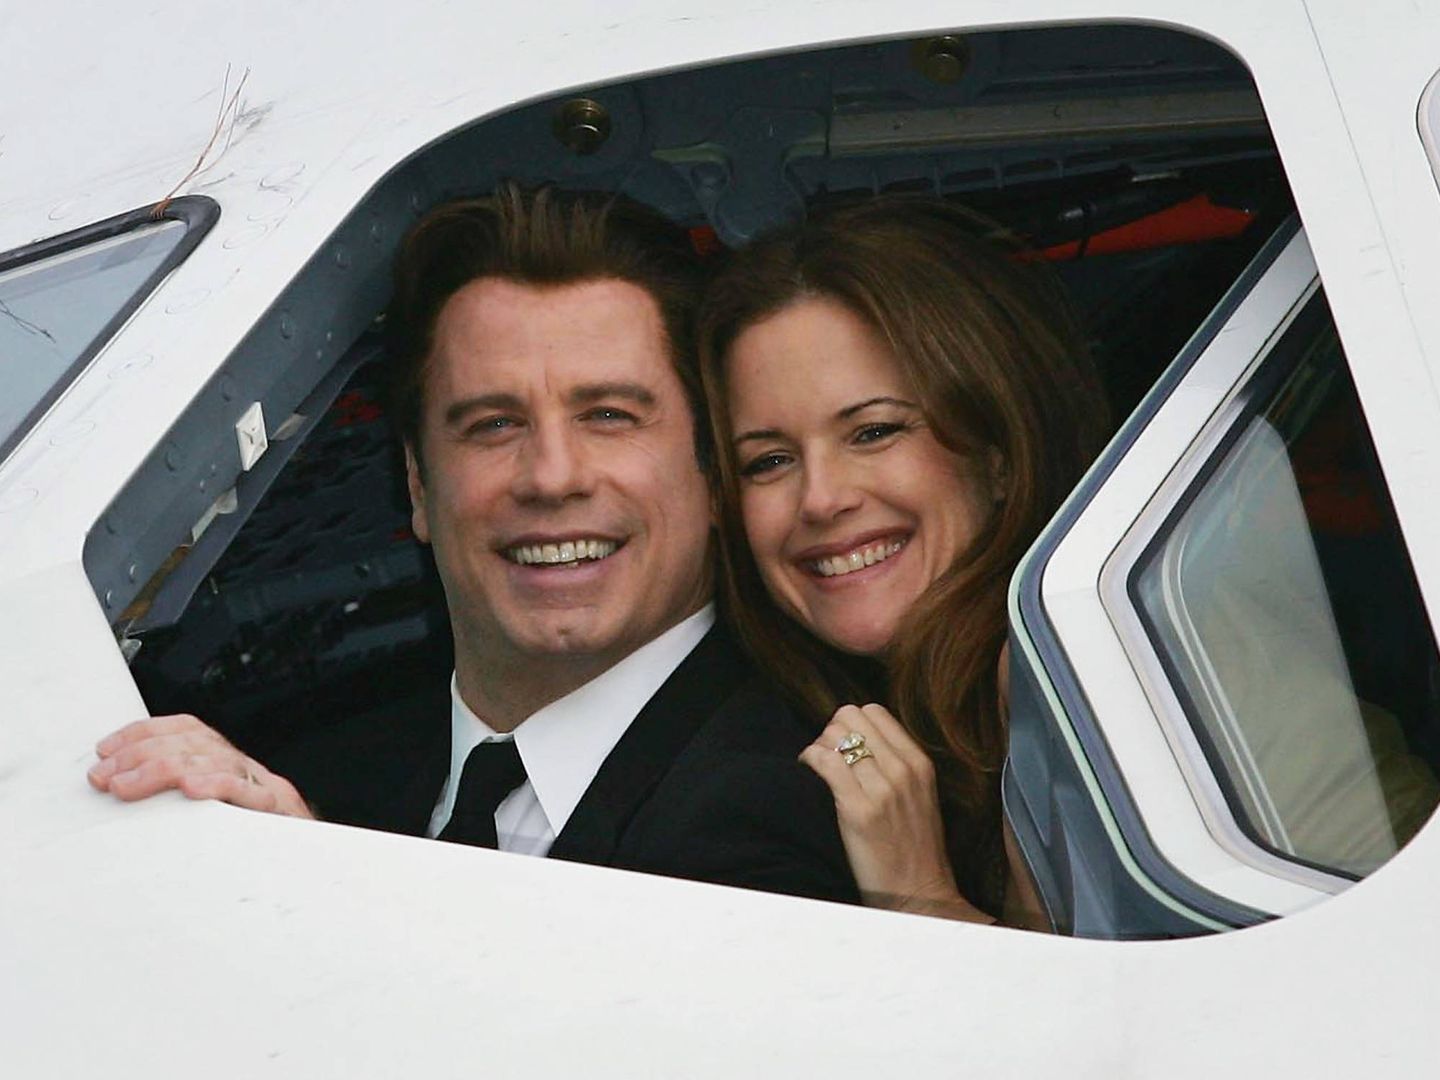  John y Kelly posan en la cabina de un avión. (Getty)